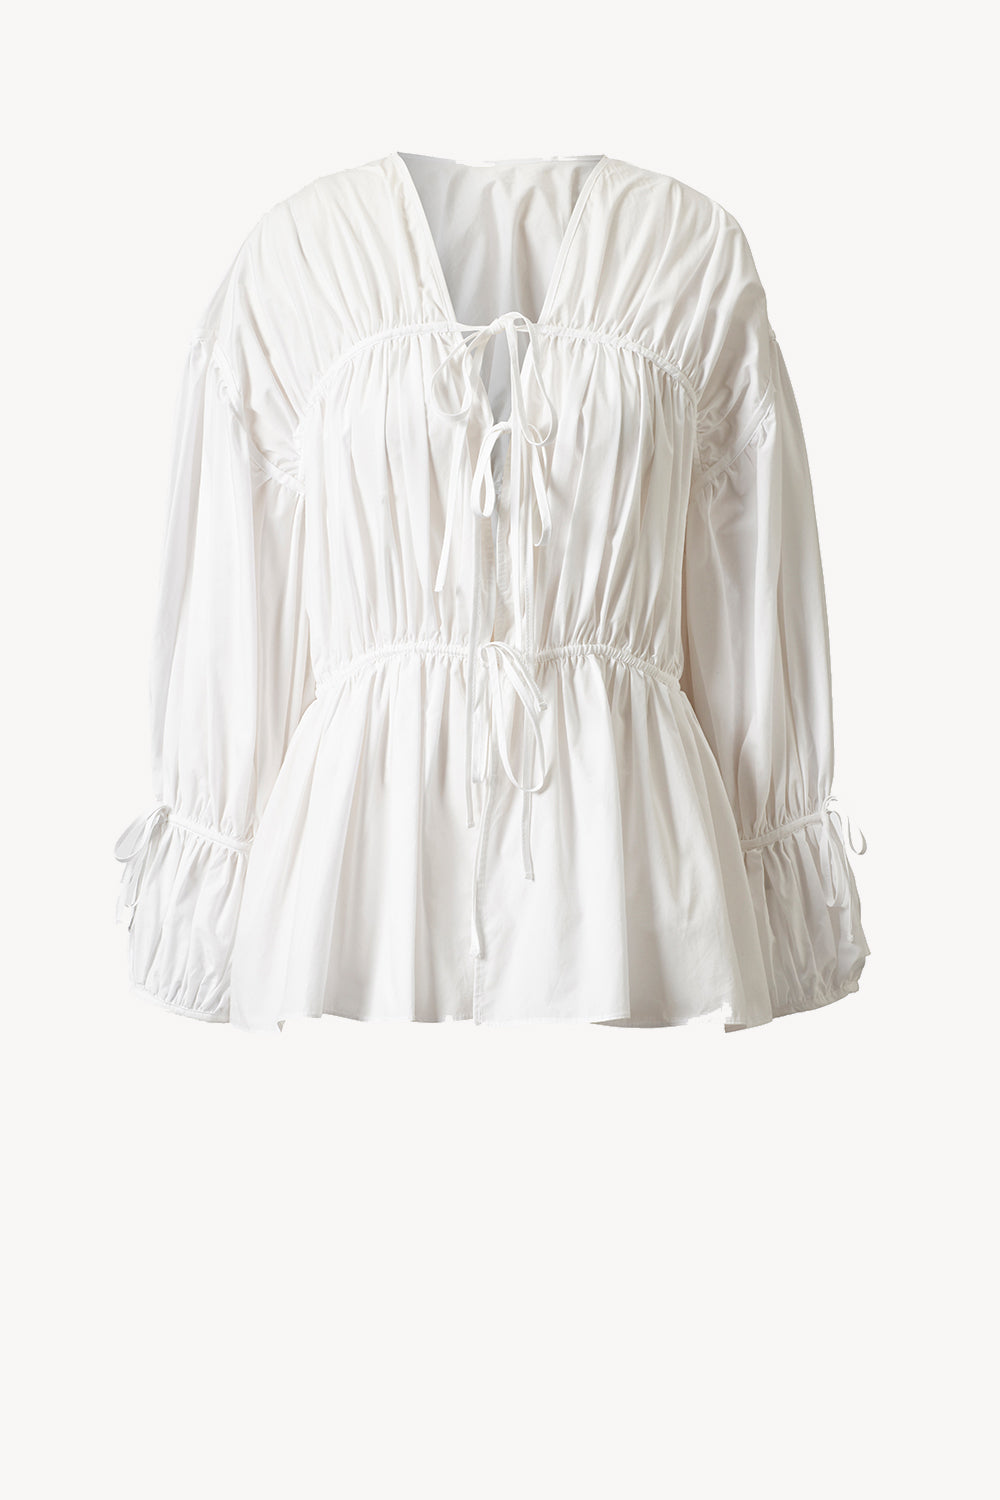 Cleo Top Organic Cotton White · TOVE Studio · Advanced Contemporary  Womenswear Brand